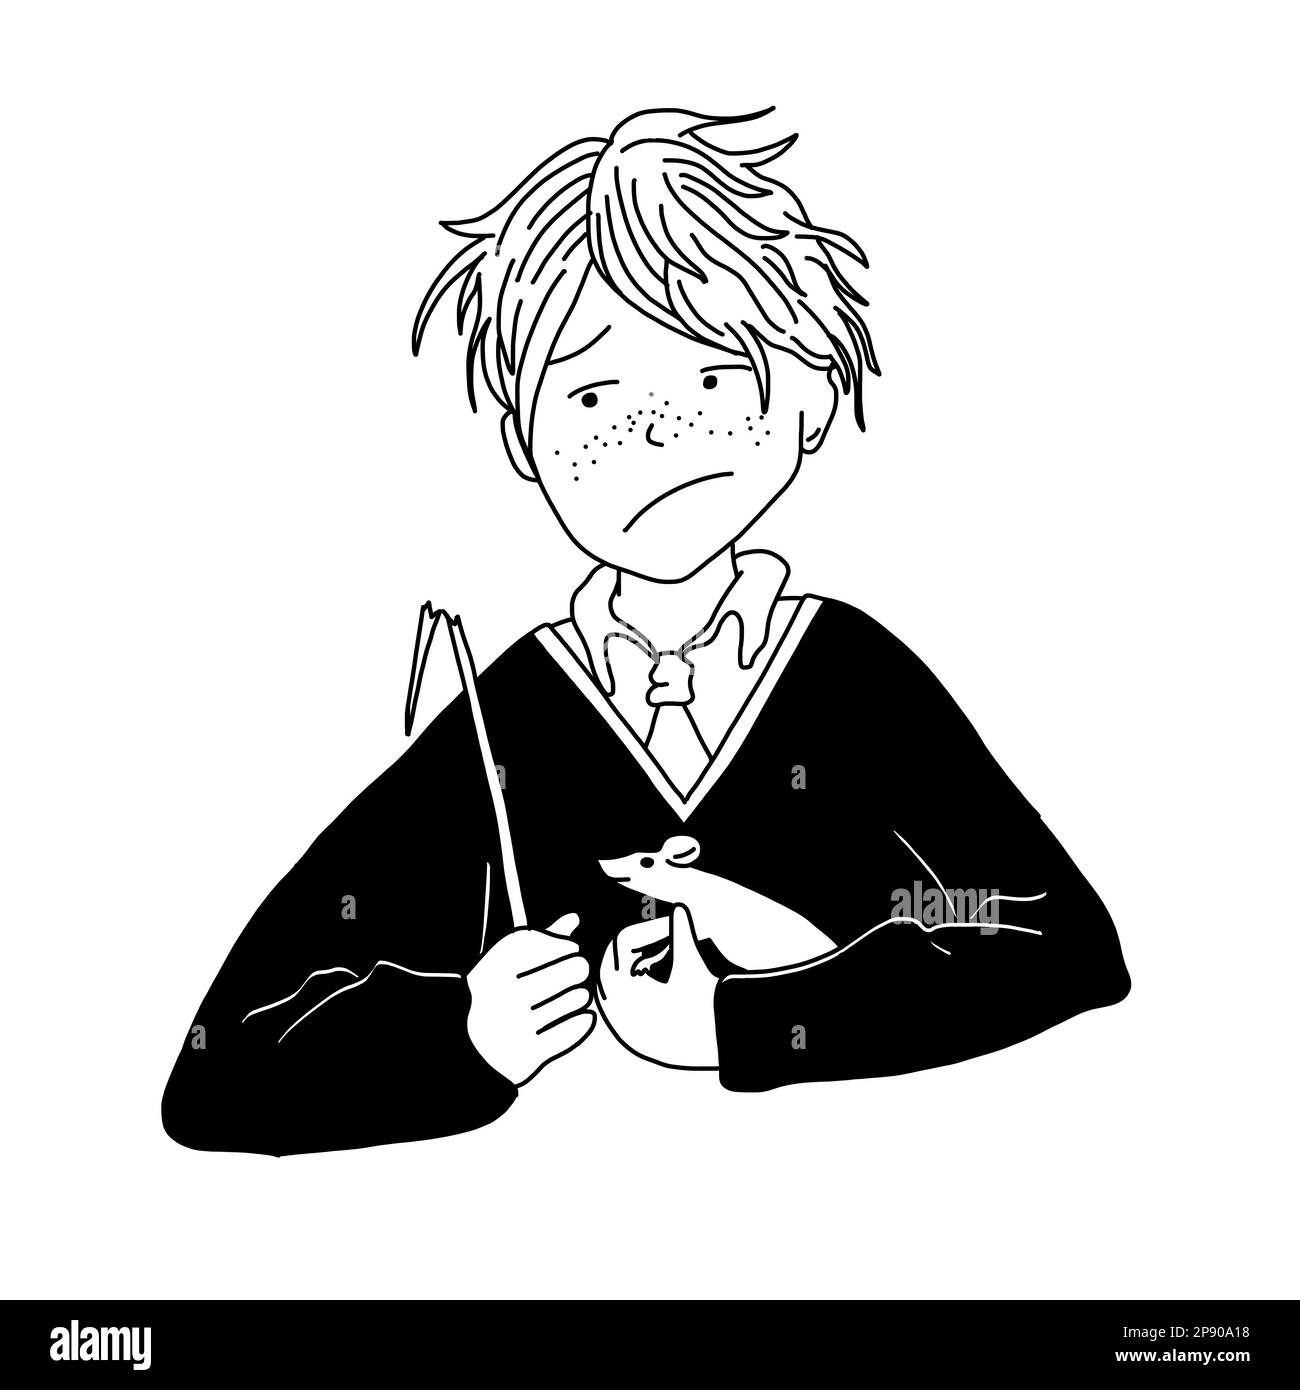 Ron con un ratto in bicchieri con gufo bianco dei libri. Illustrazione magica vettoriale in stile fumetto isolato su sfondo bianco. Illustrazione Vettoriale